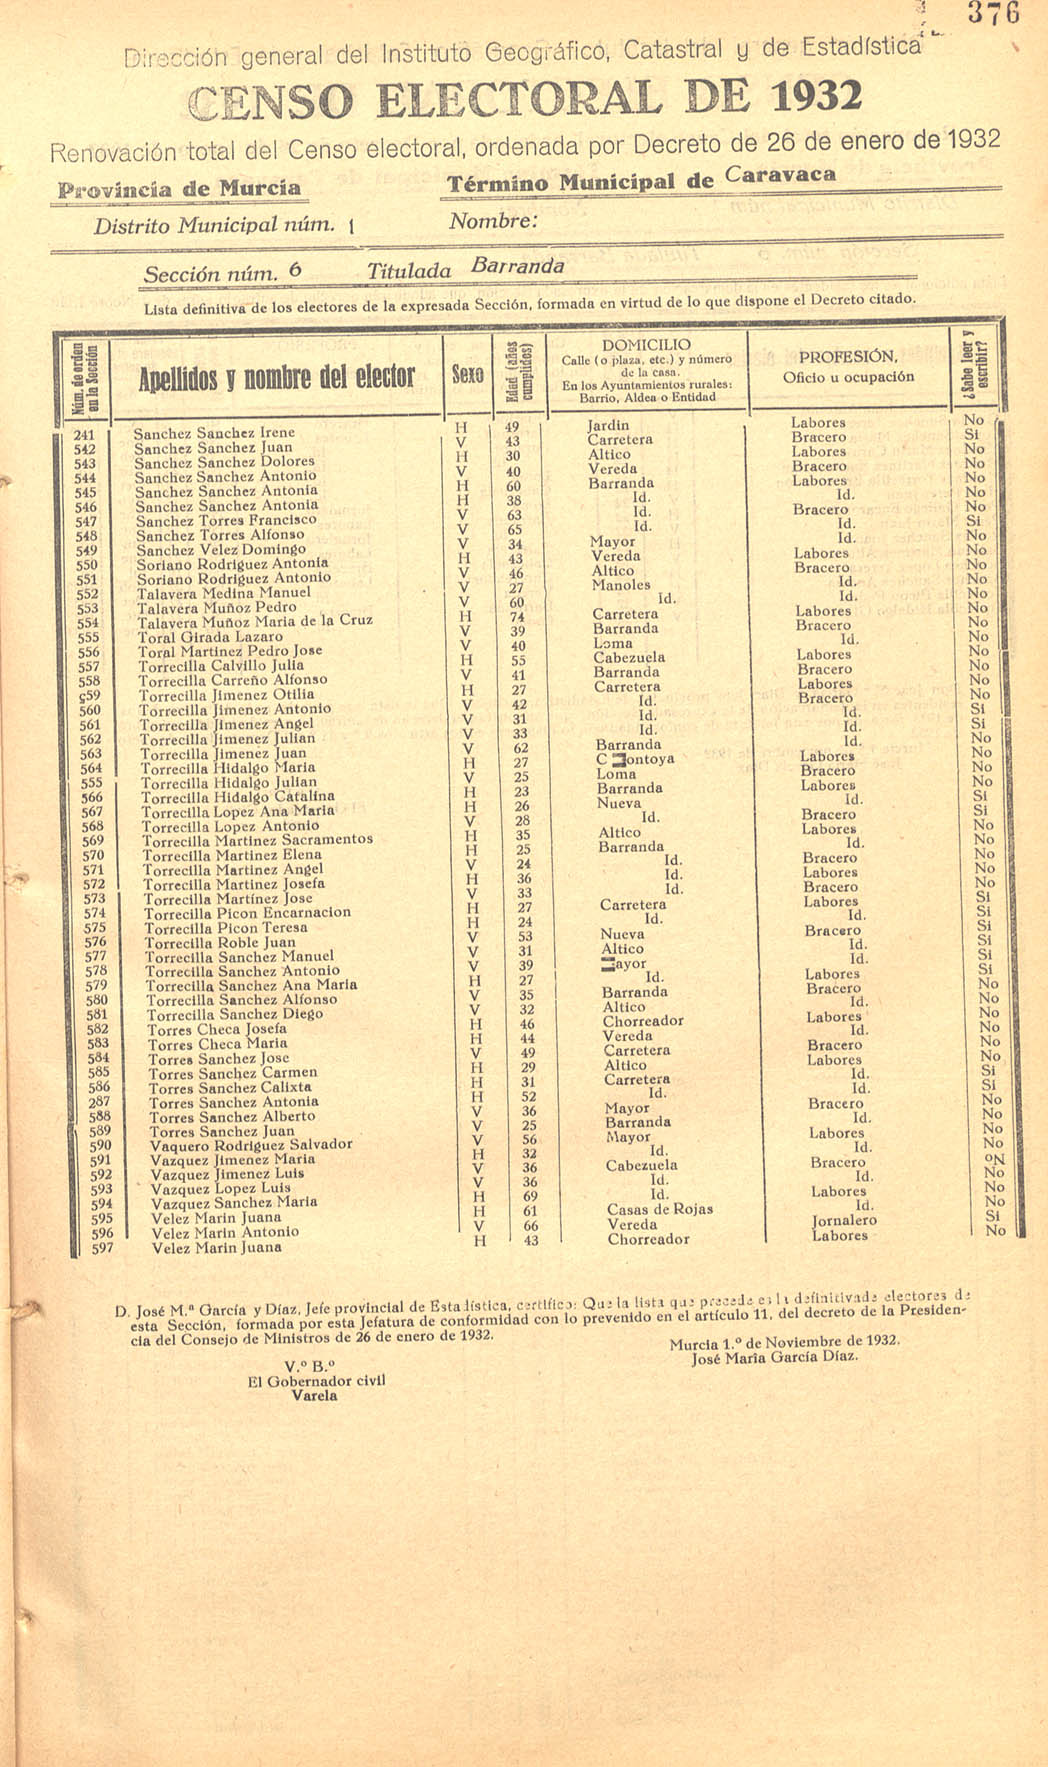 Censo electoral provincial de 1932. Listas definitivas de Caravaca, formadas en virtud del Decreto de 26 de enero de 1932.